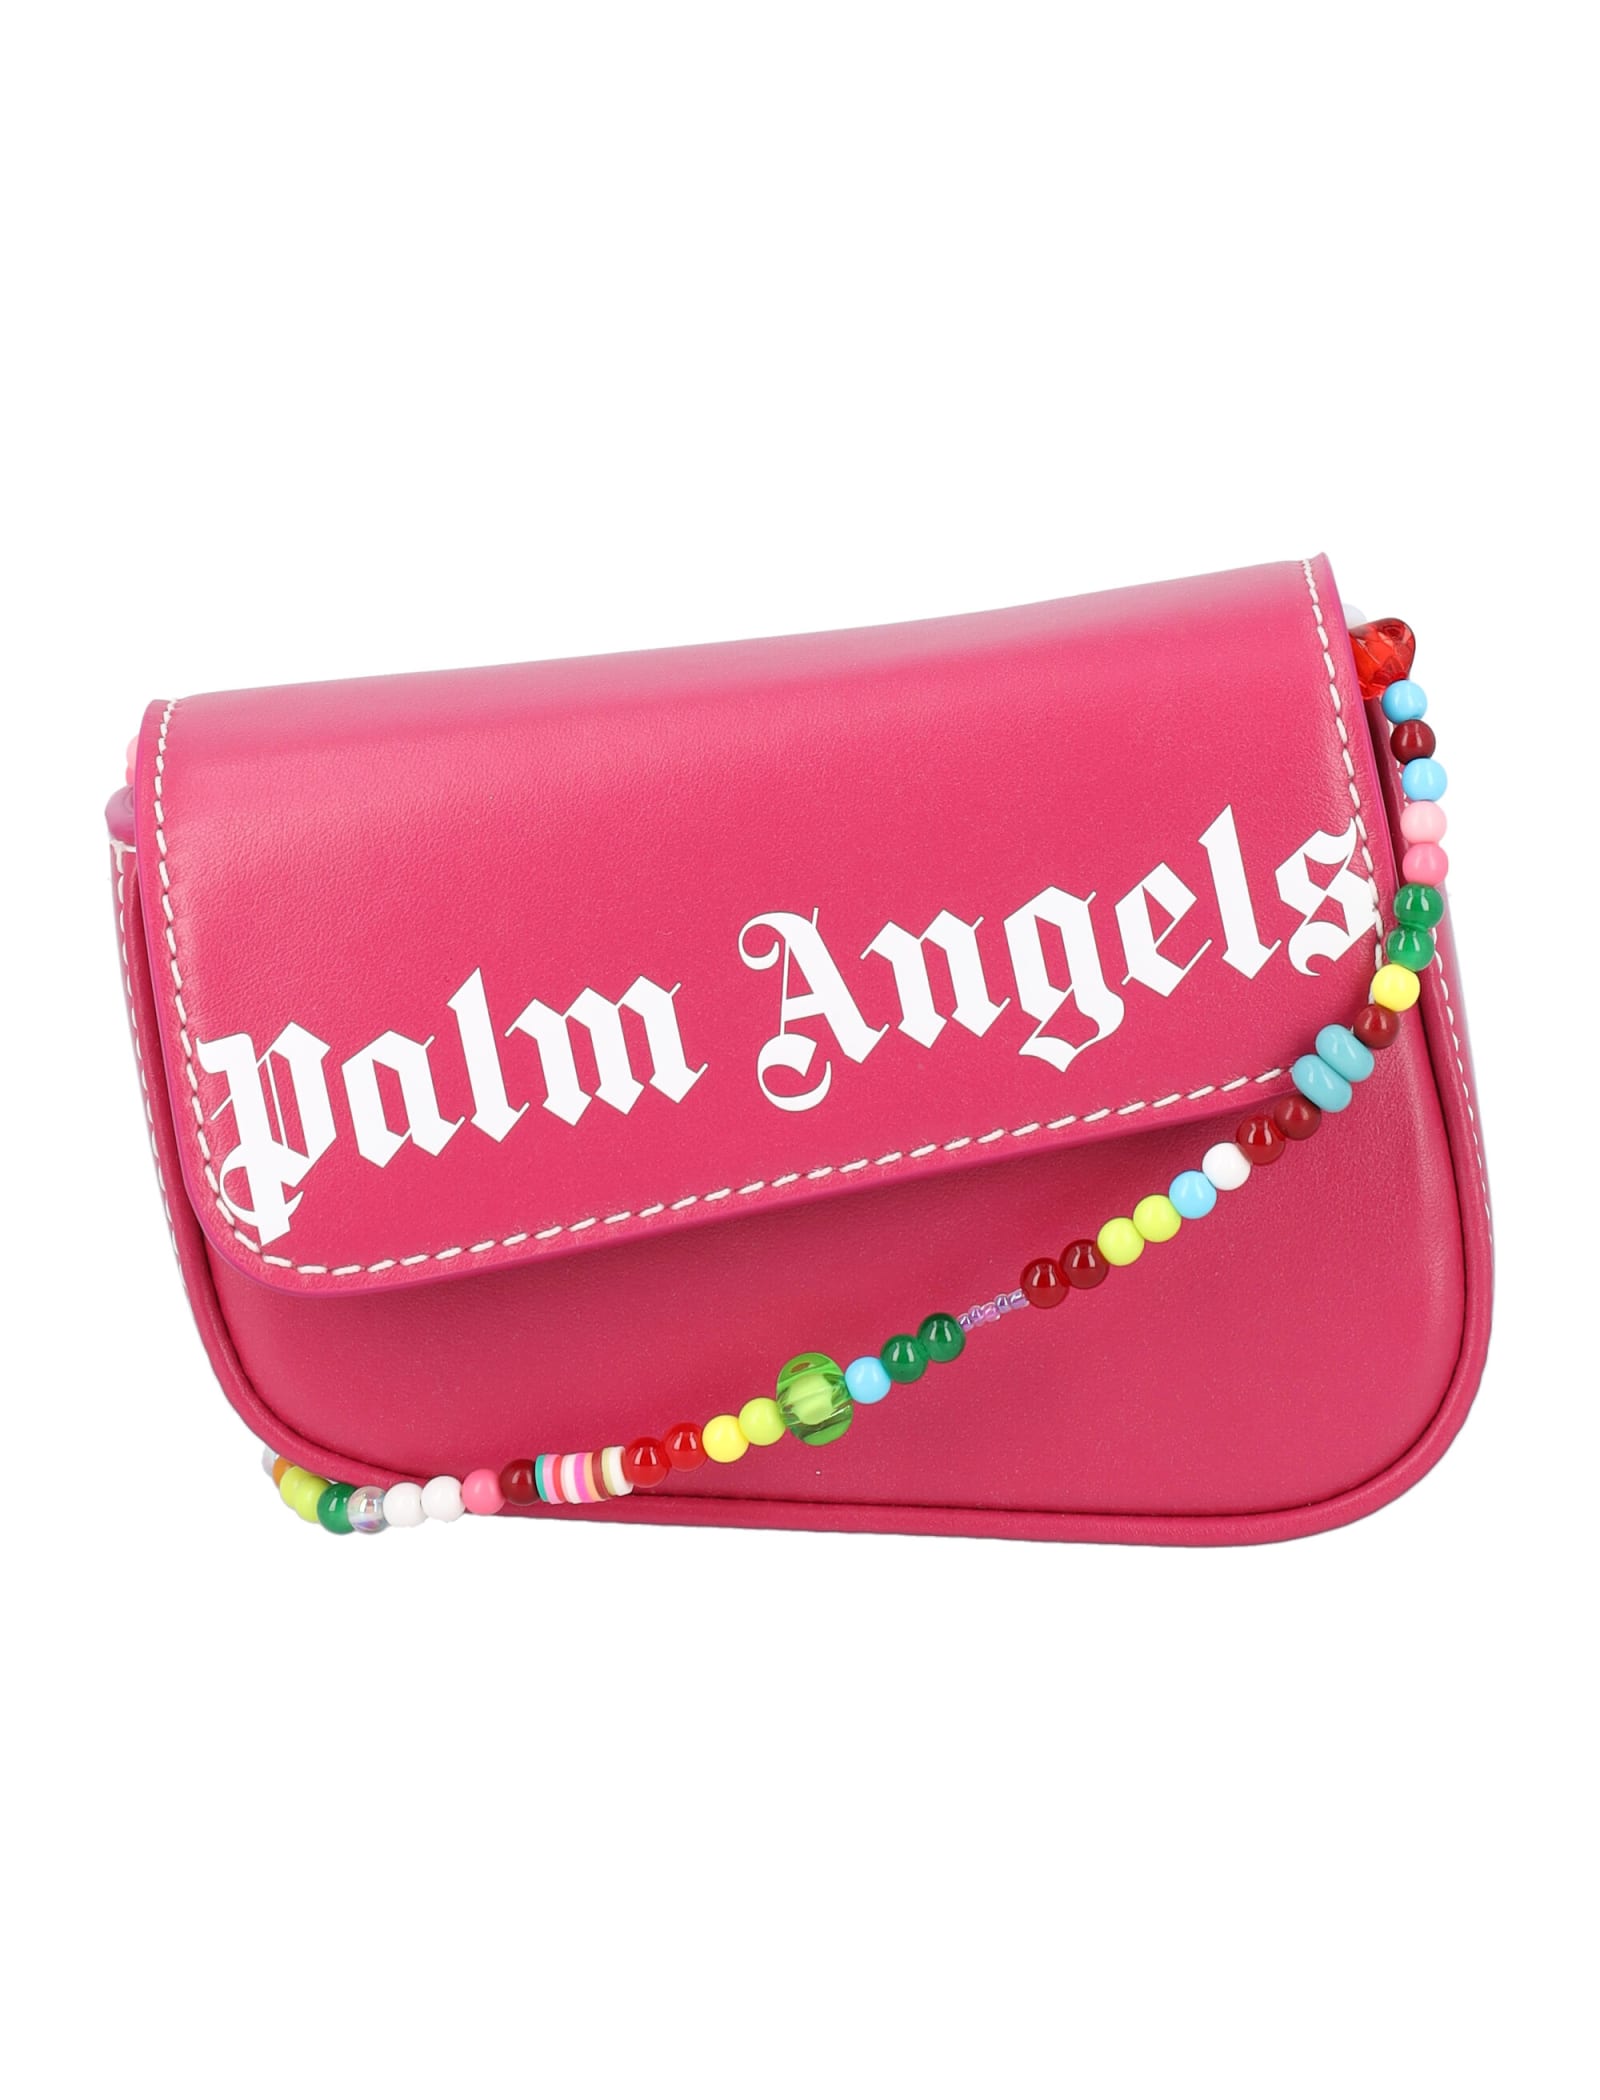 Palm Angels Beads Crash Mini Bag